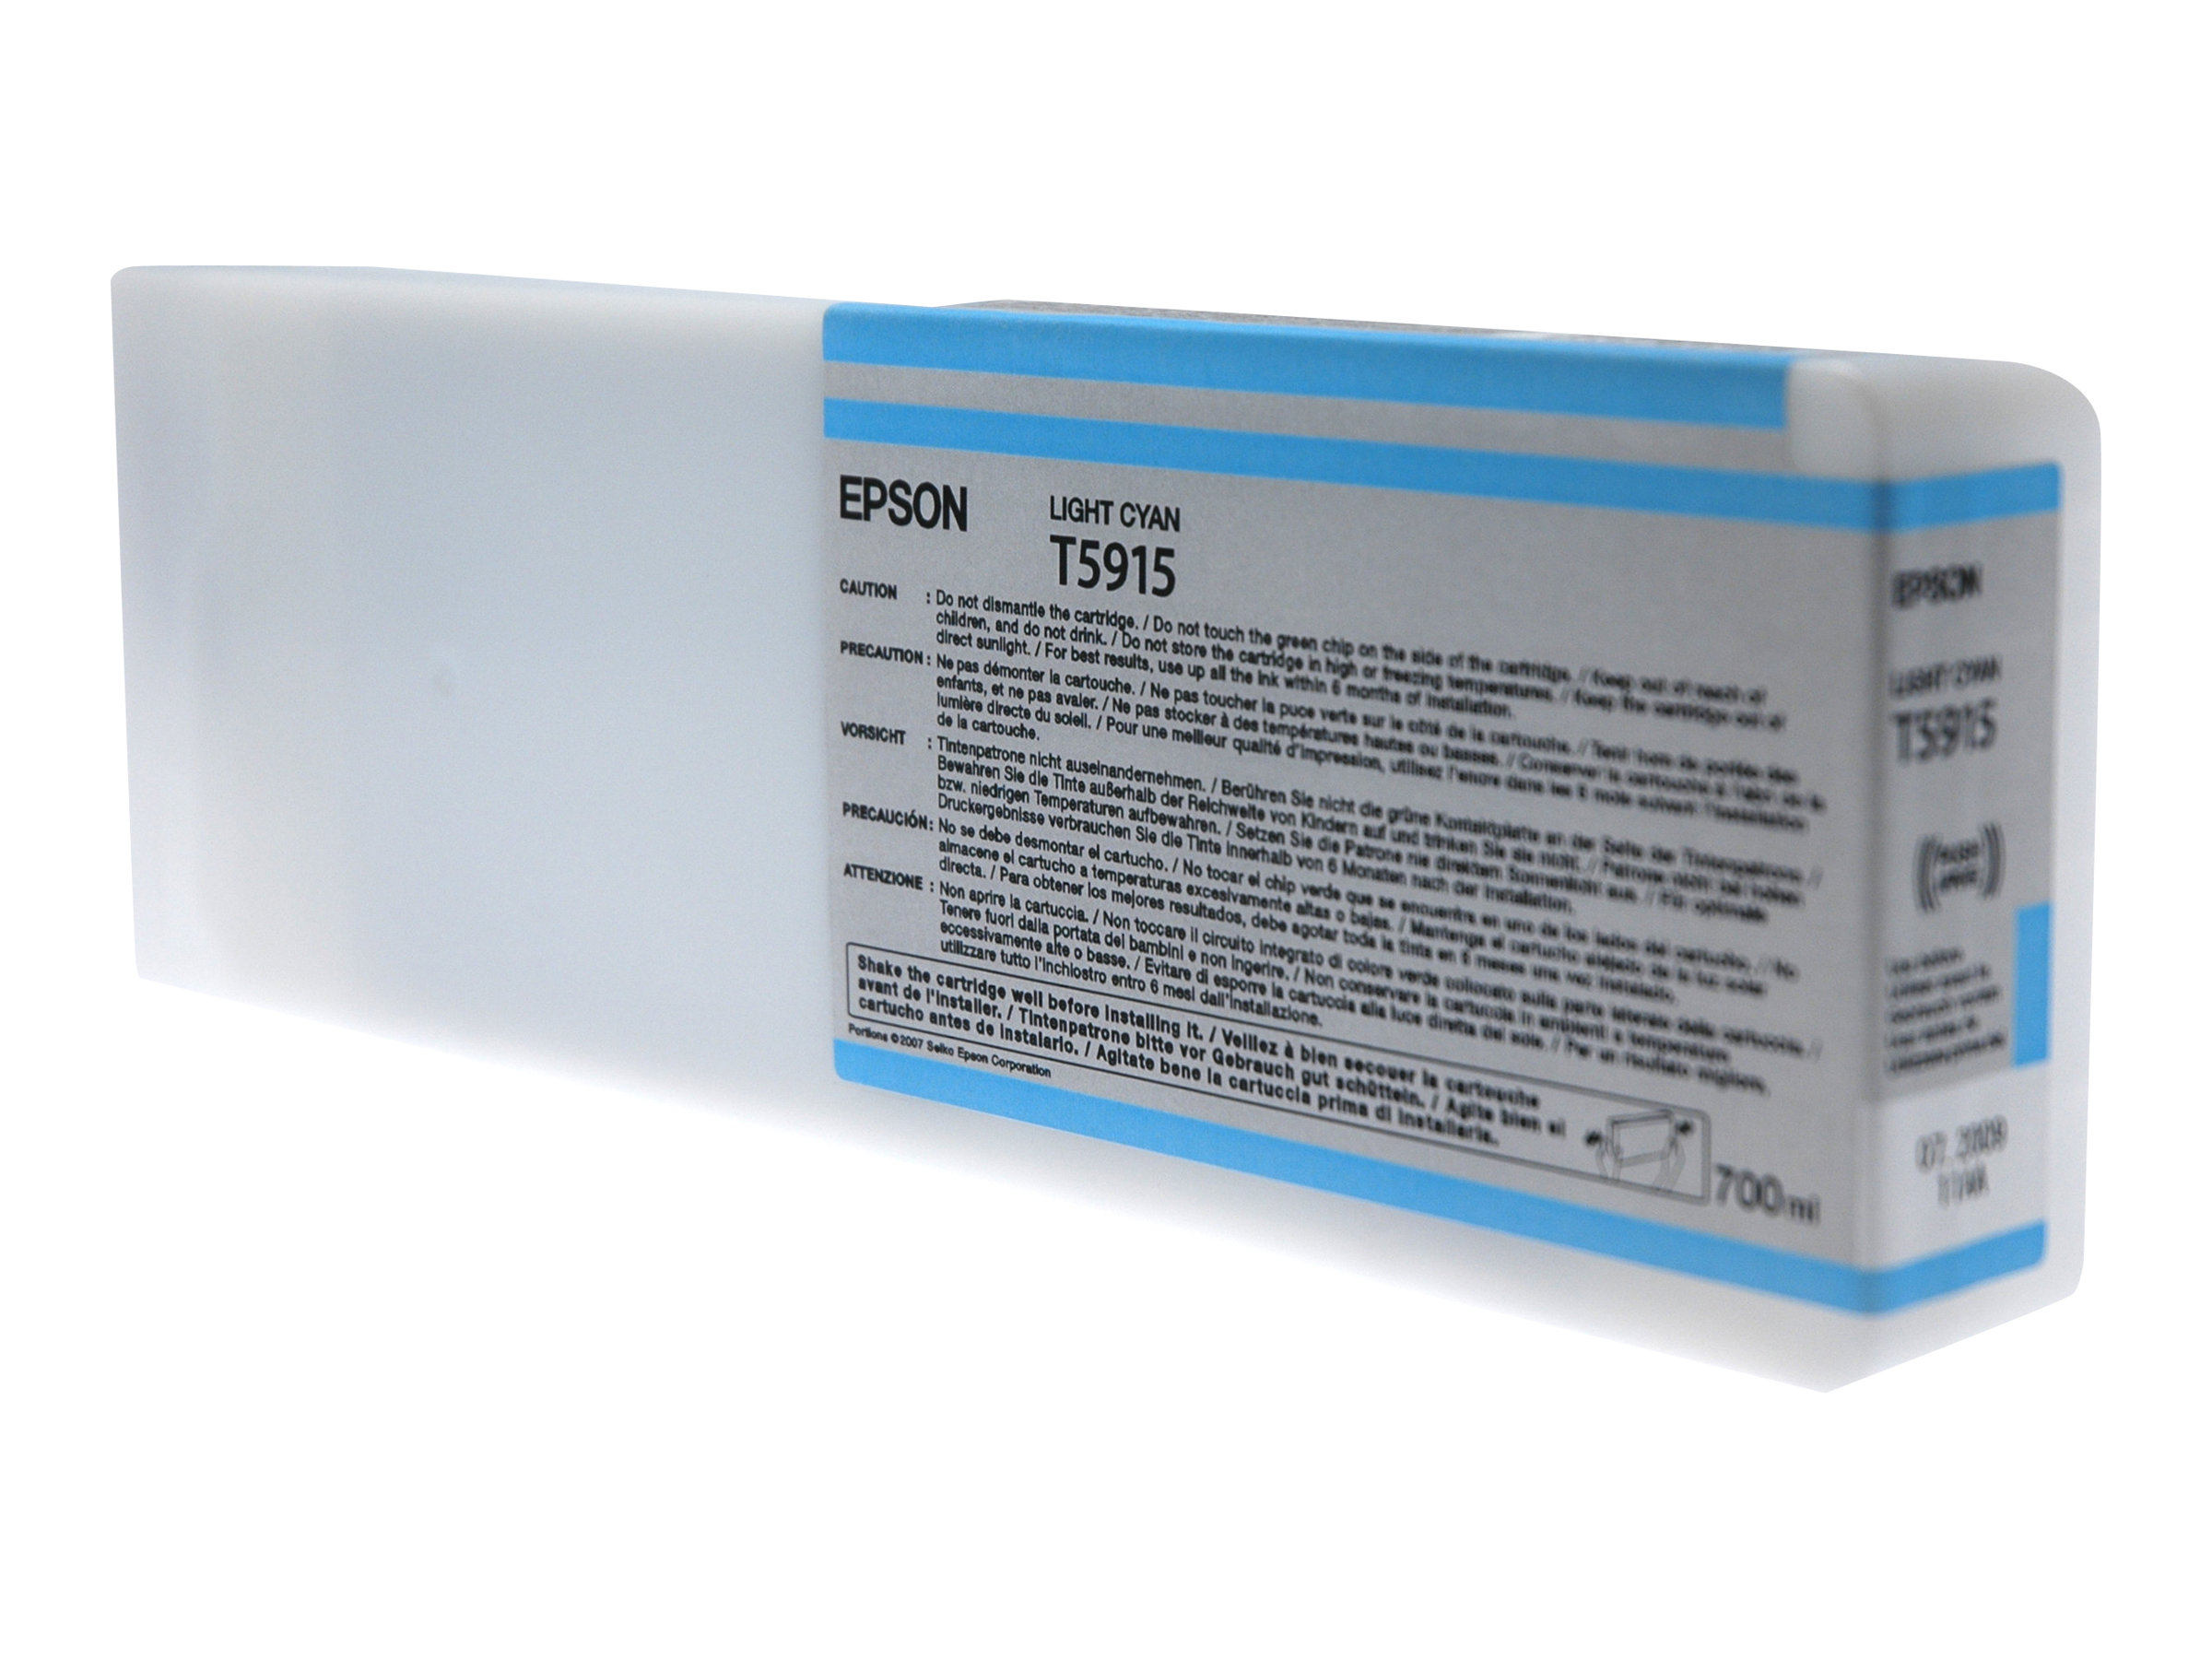 Epson T5915 - 700 ml - cyan clair - original - cartouche d'encre - pour Stylus Pro 11880, Pro 11880 AGFA, Pro 11880 Xerox - C13T591500 - Cartouches d'imprimante